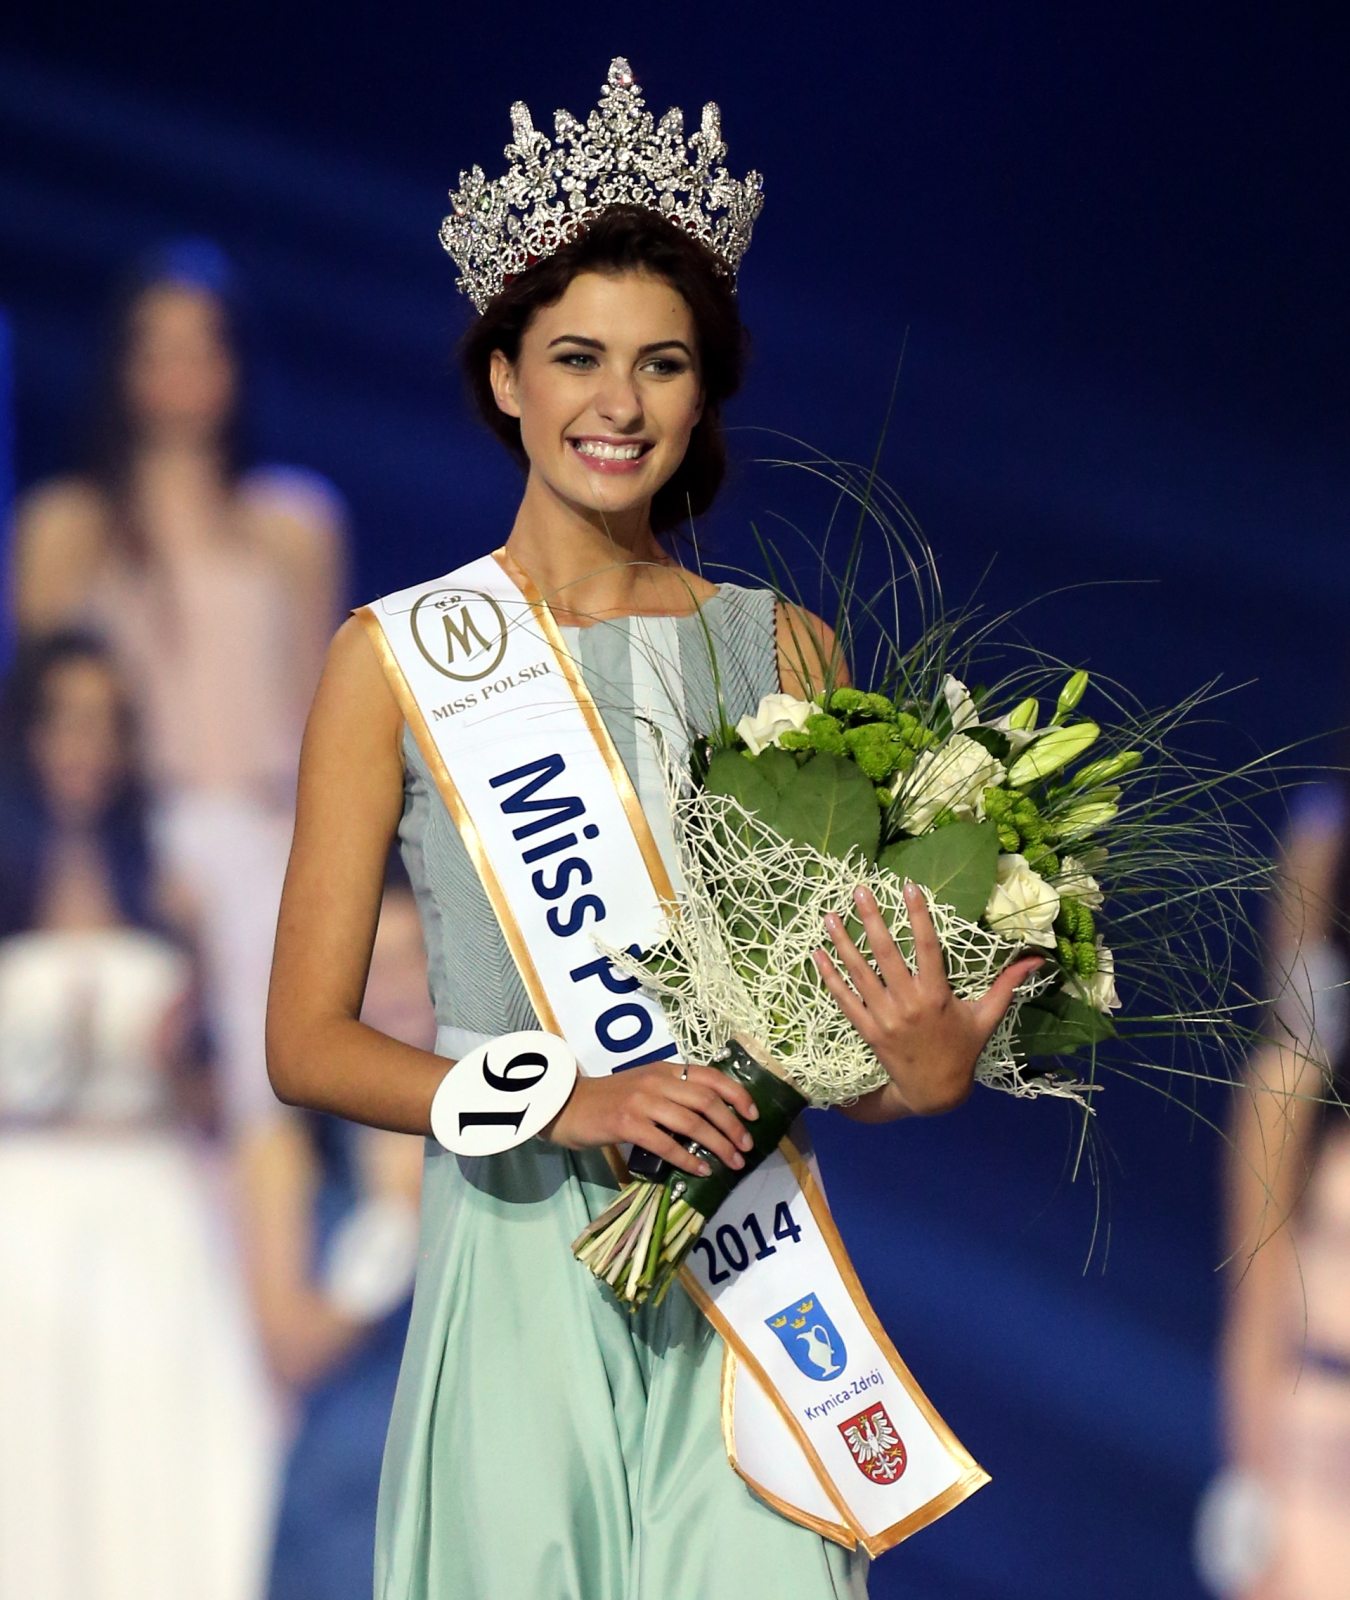 Gala finałowa wyborów Miss Polski 2014